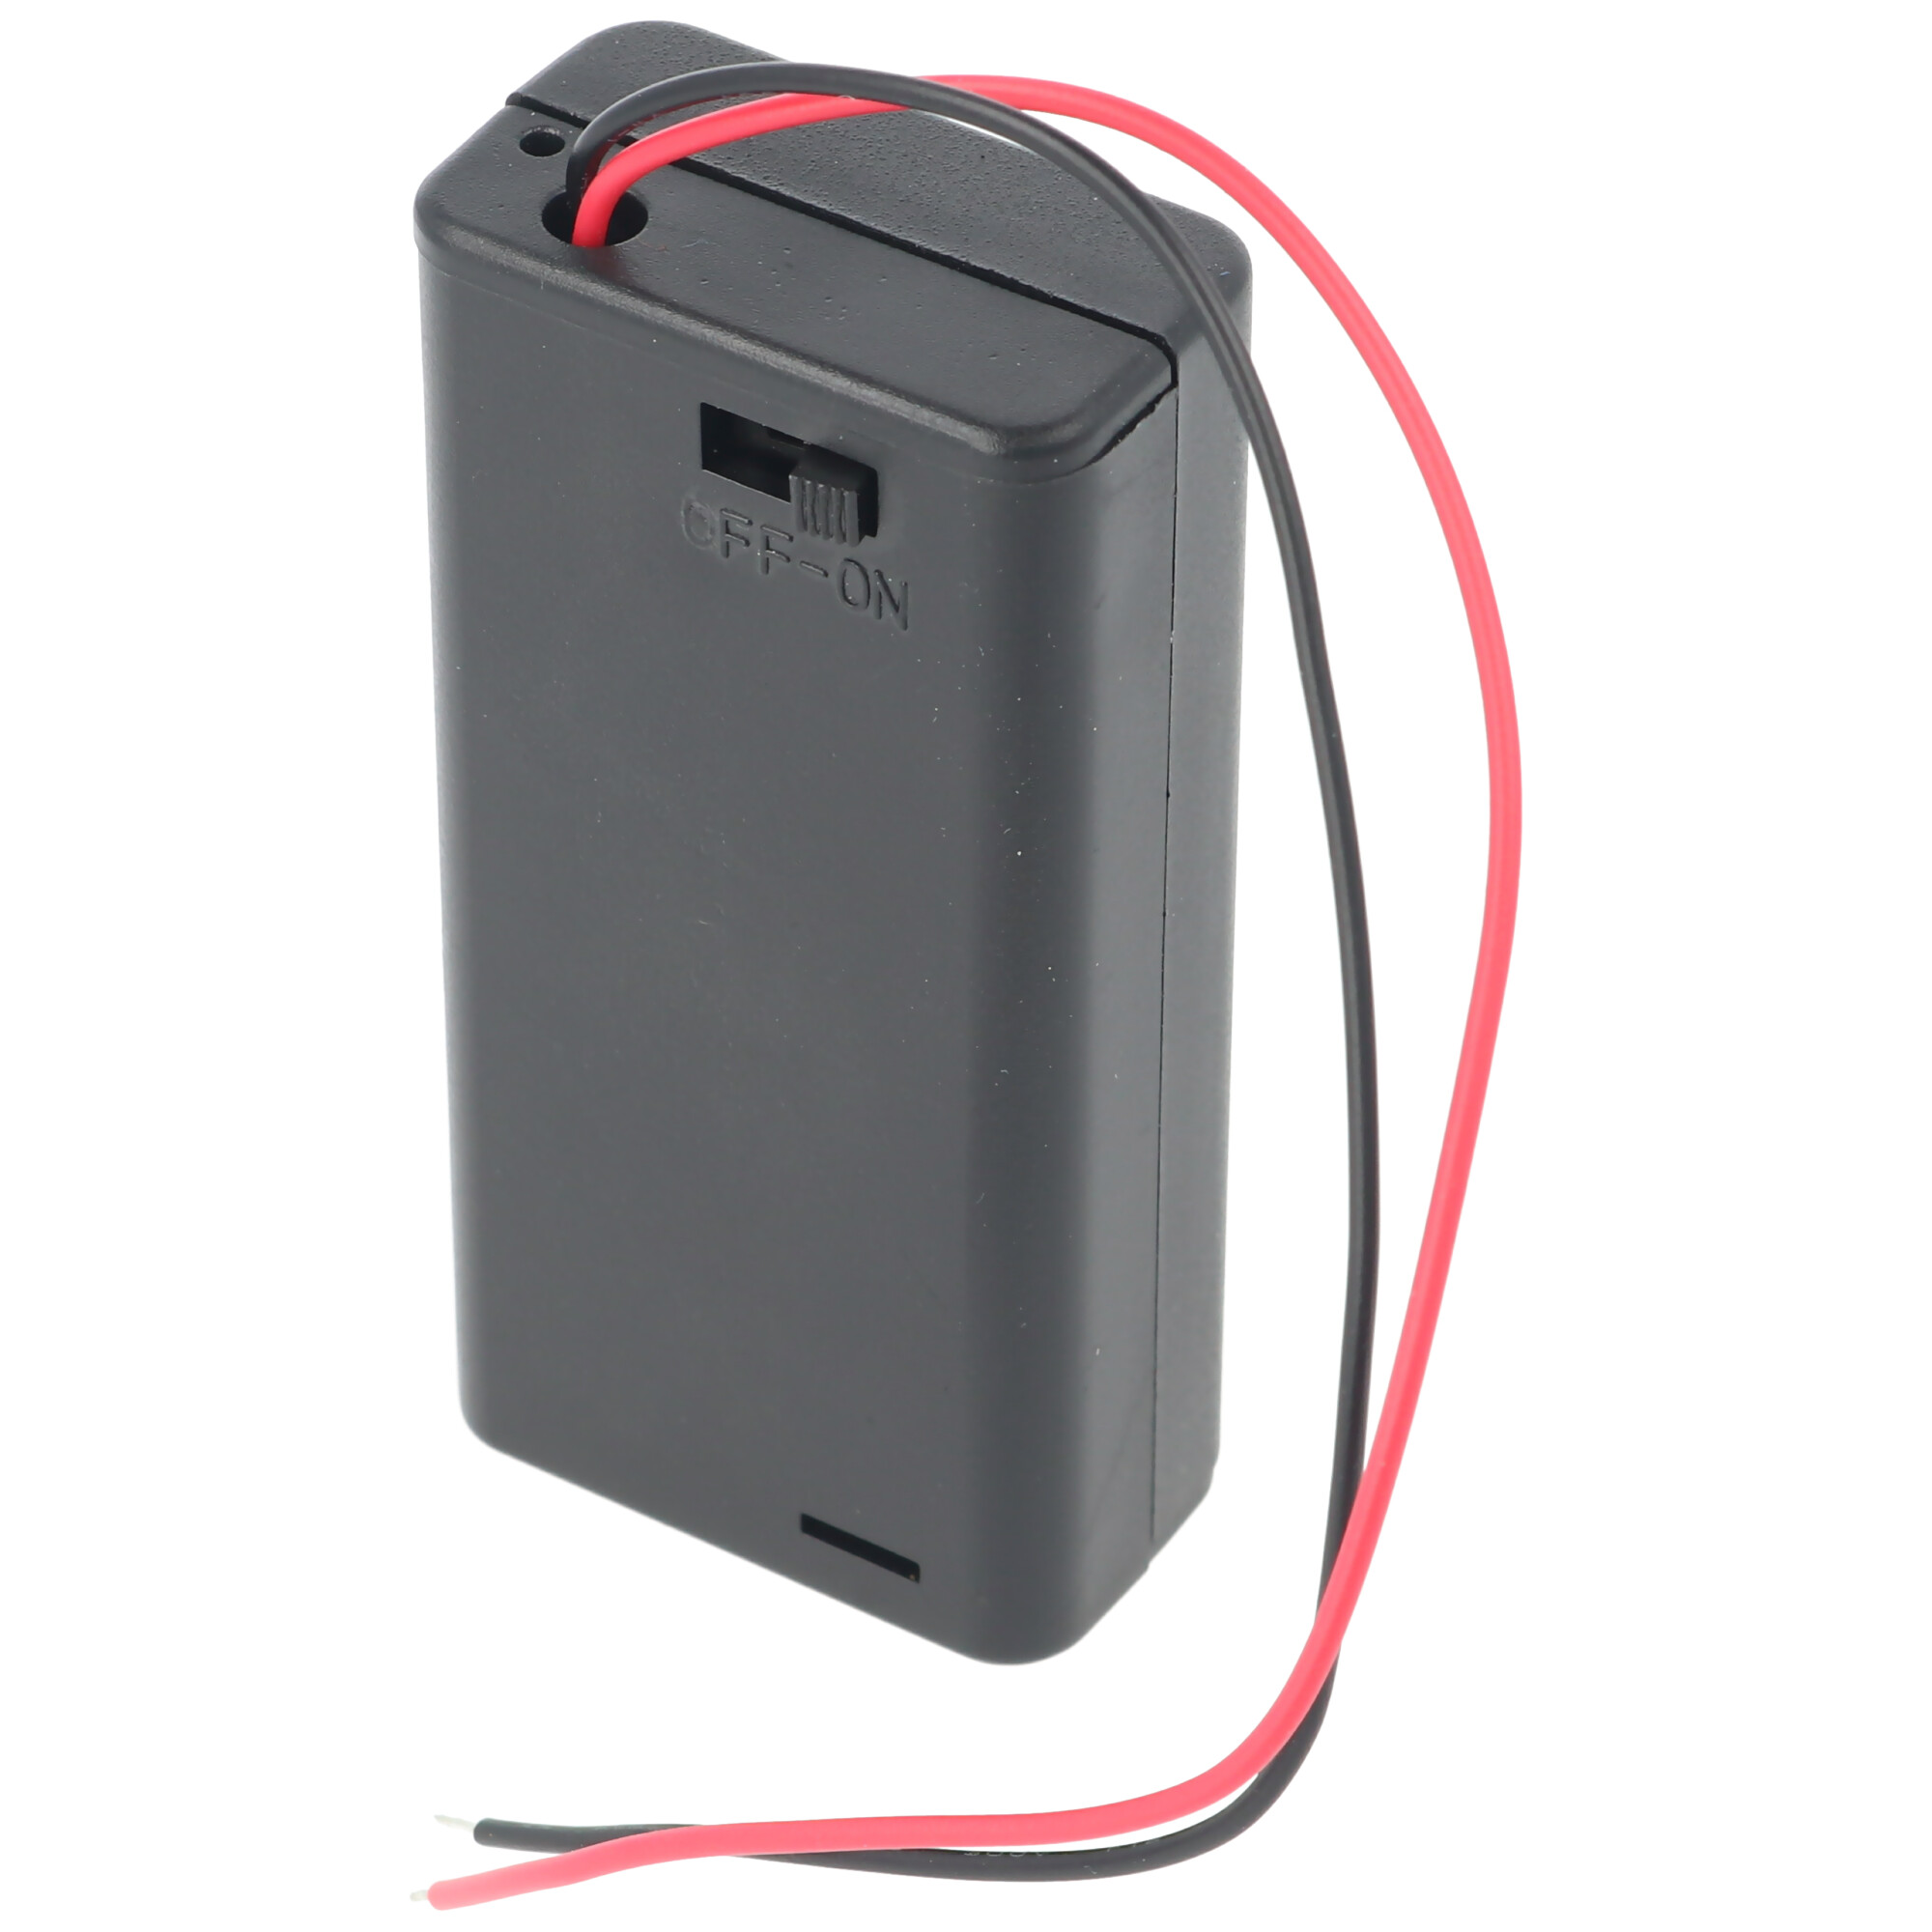 Batteriehalter für 2x Mignon AA LR6 Batterie mit An/Aus Schalter